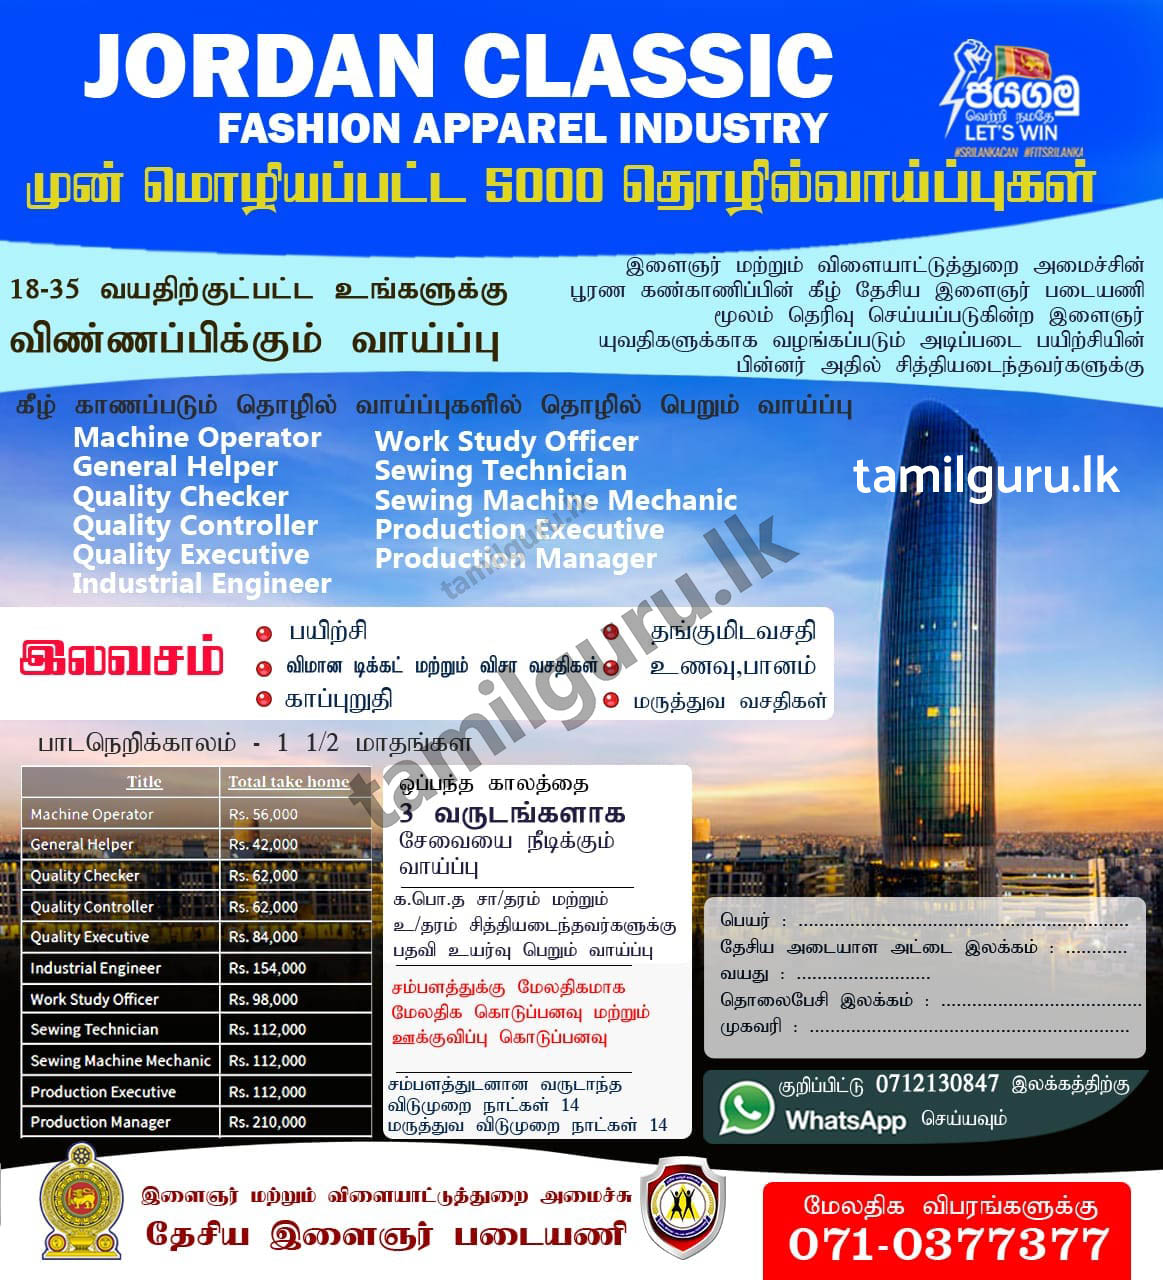 தேசிய இளைஞர் படையணி / National Youth Corps Foreign Job Vacancies 2021 - Jordan Classic Fashion Apparel Industry